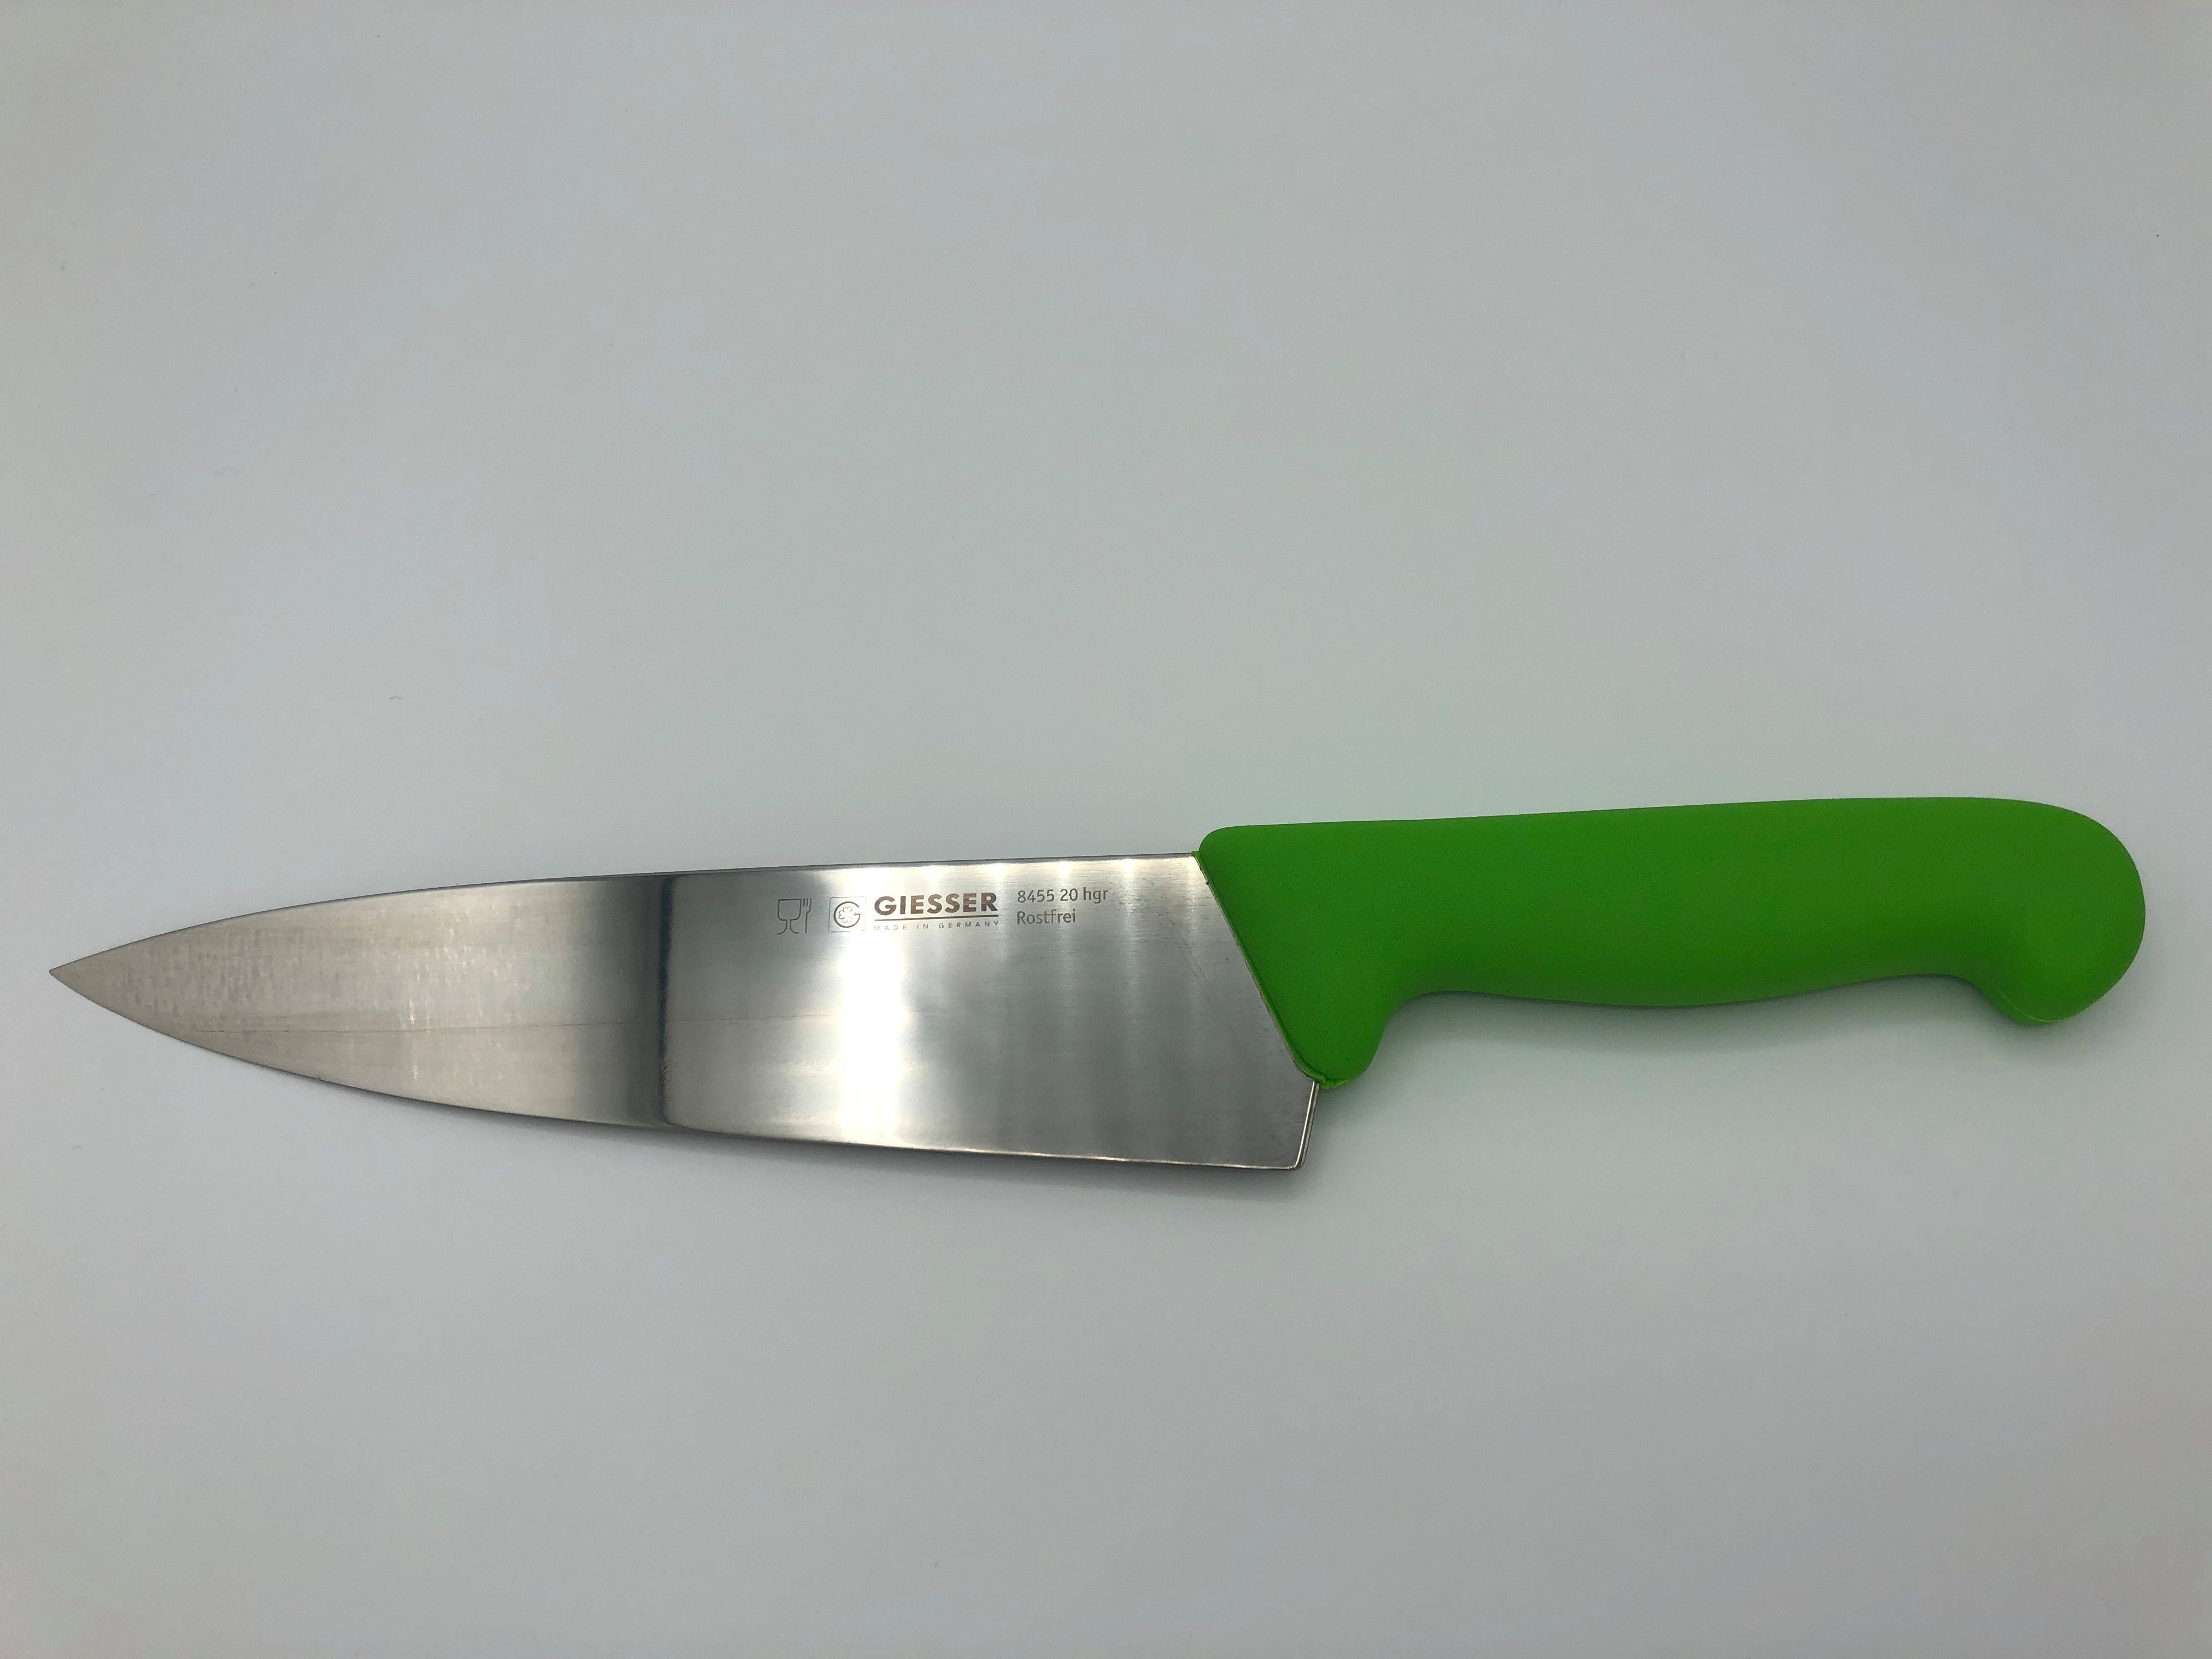 Giesser Messer Kochmesser Küchenmesser breit 8455, Rostfrei, breite Form, scharf, Handabzug, Ideal für jede Küche hellgrün | Kochmesser